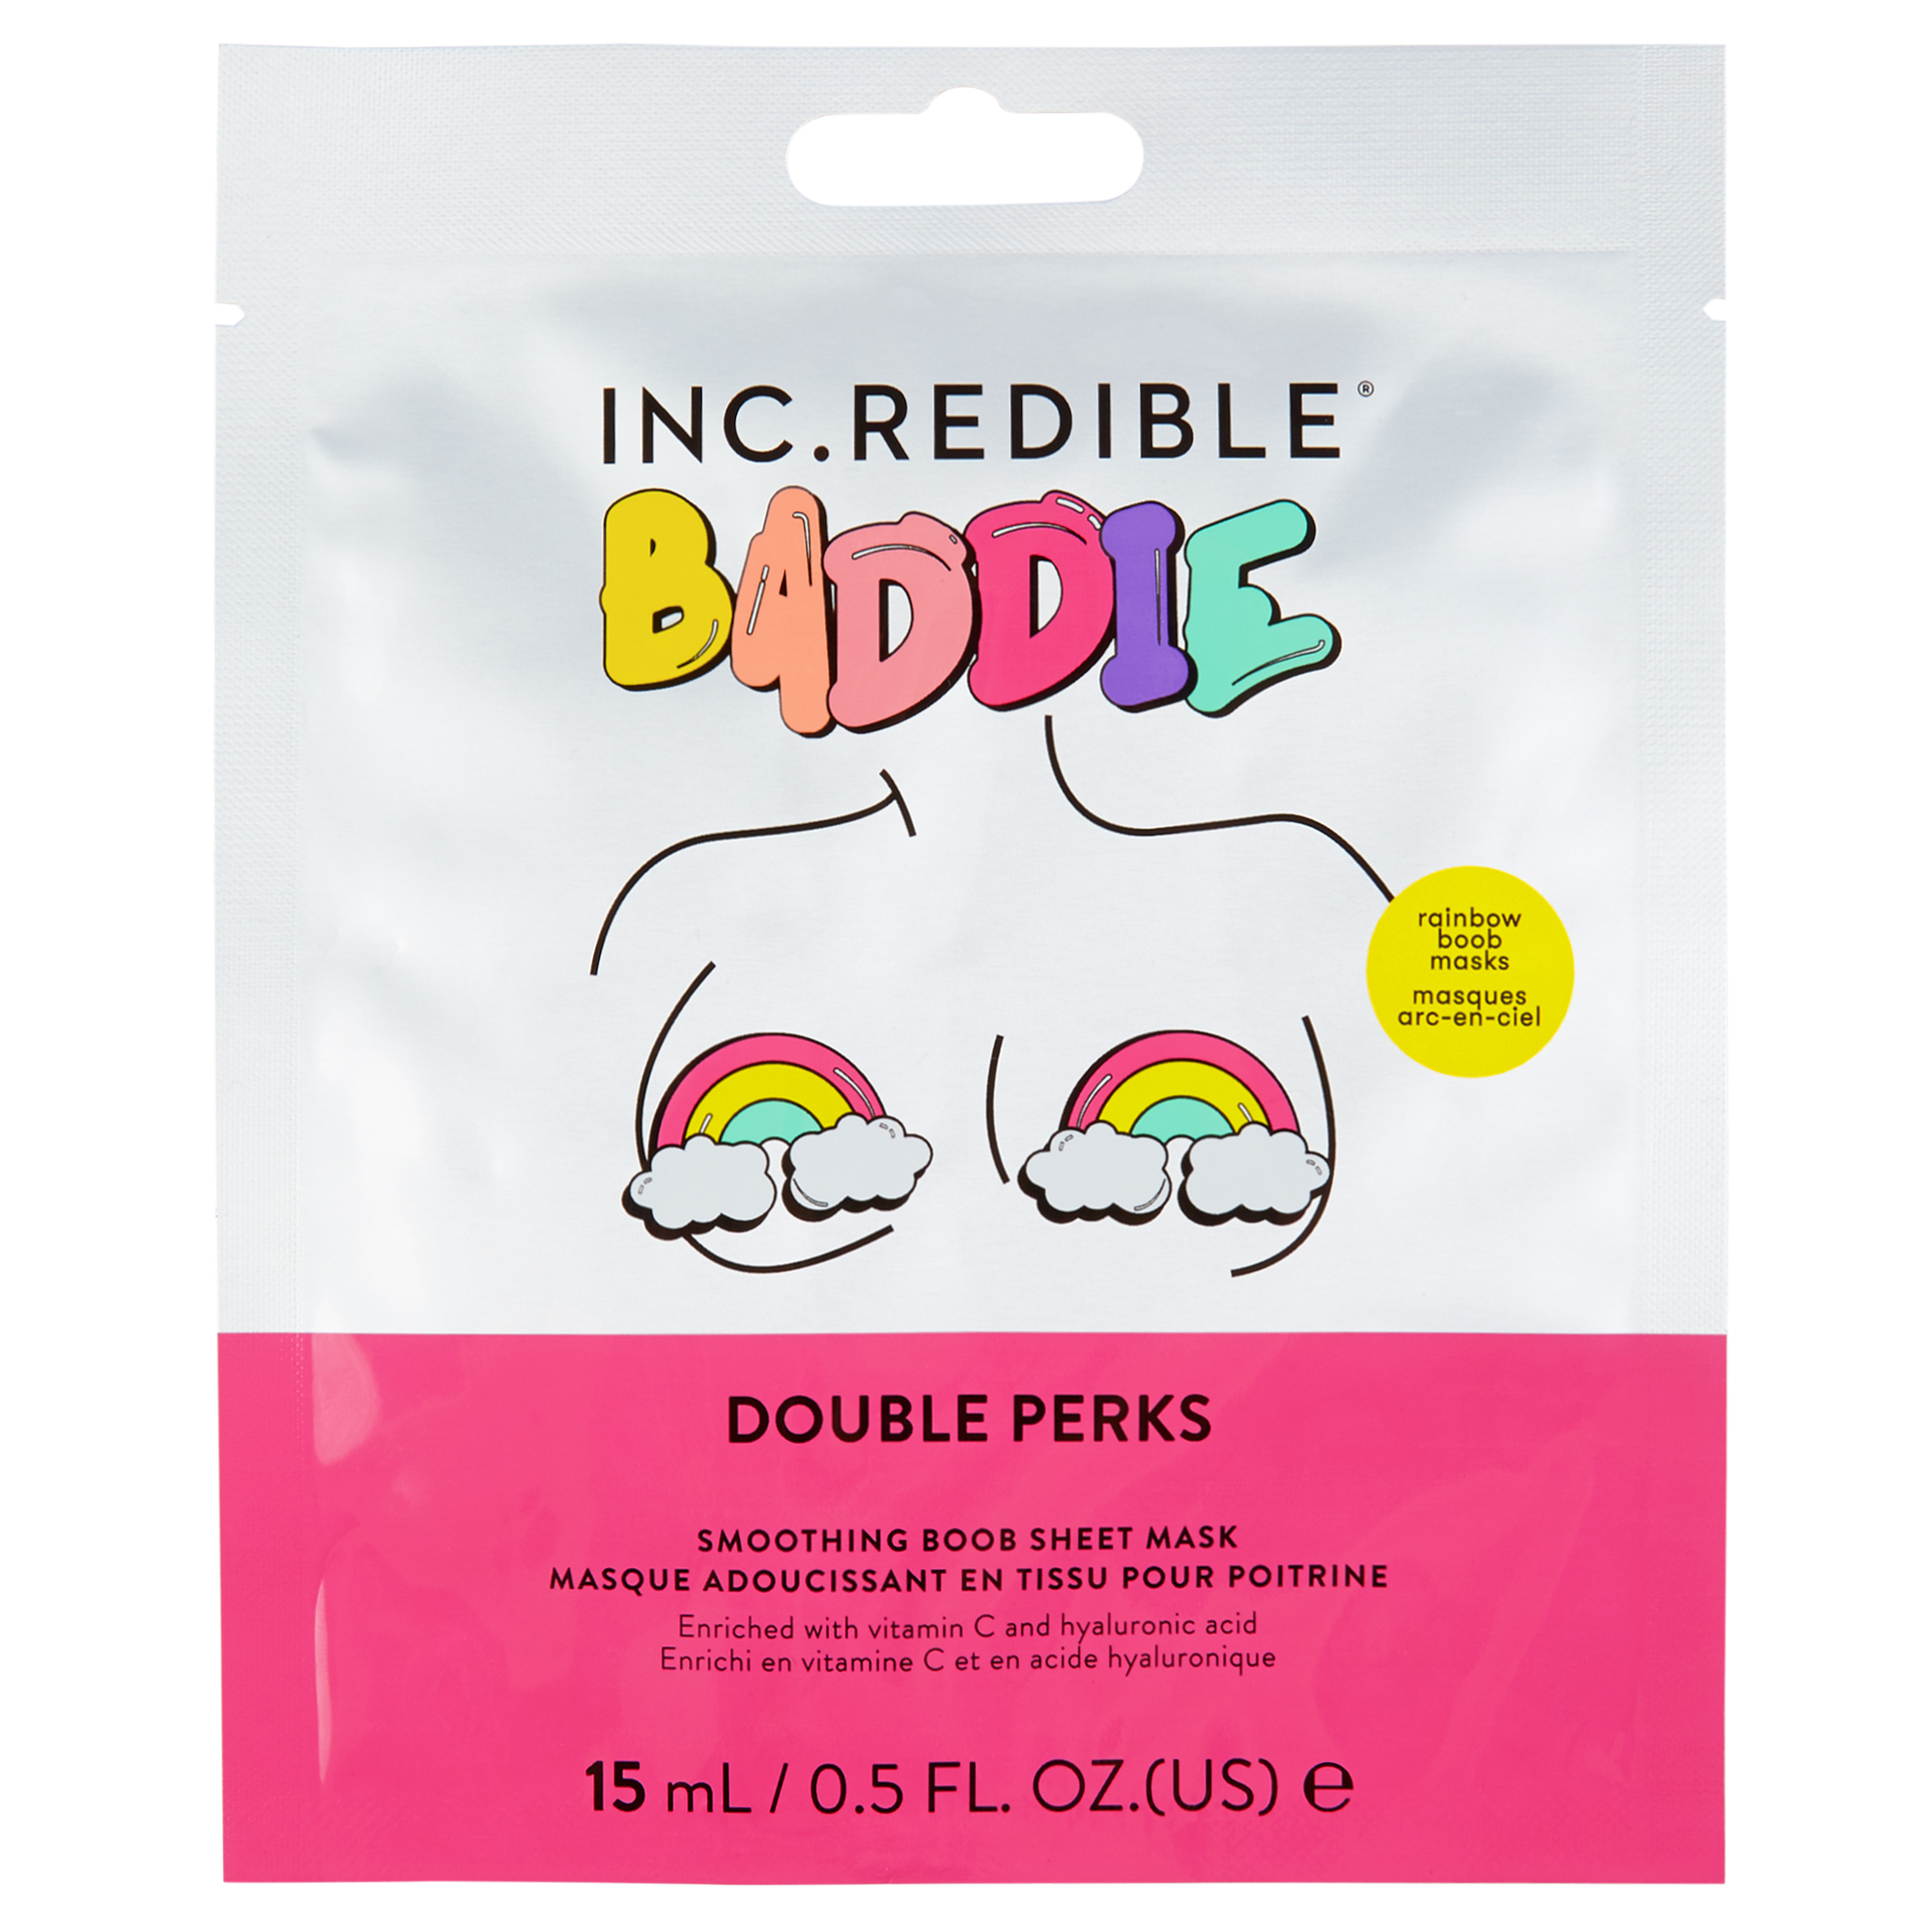 Baddie Winkle's boob masks